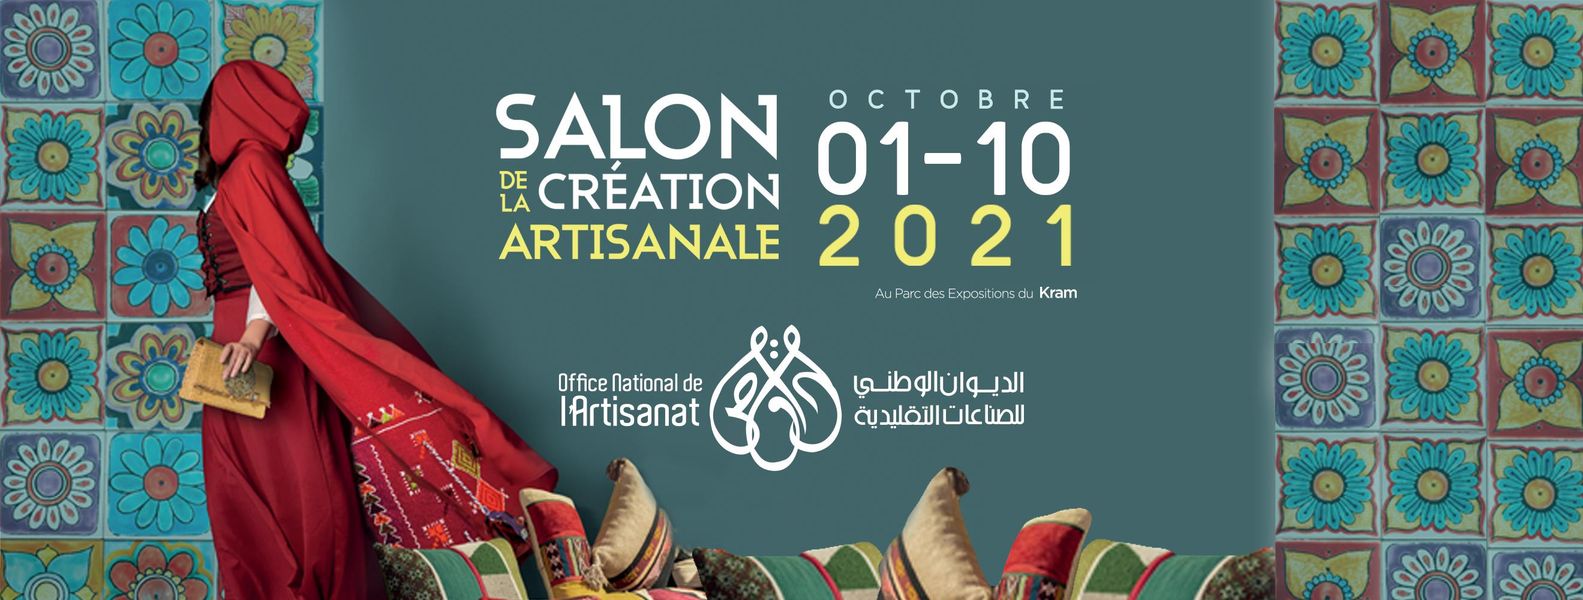 Affiche du salon de l'artisanat 2021